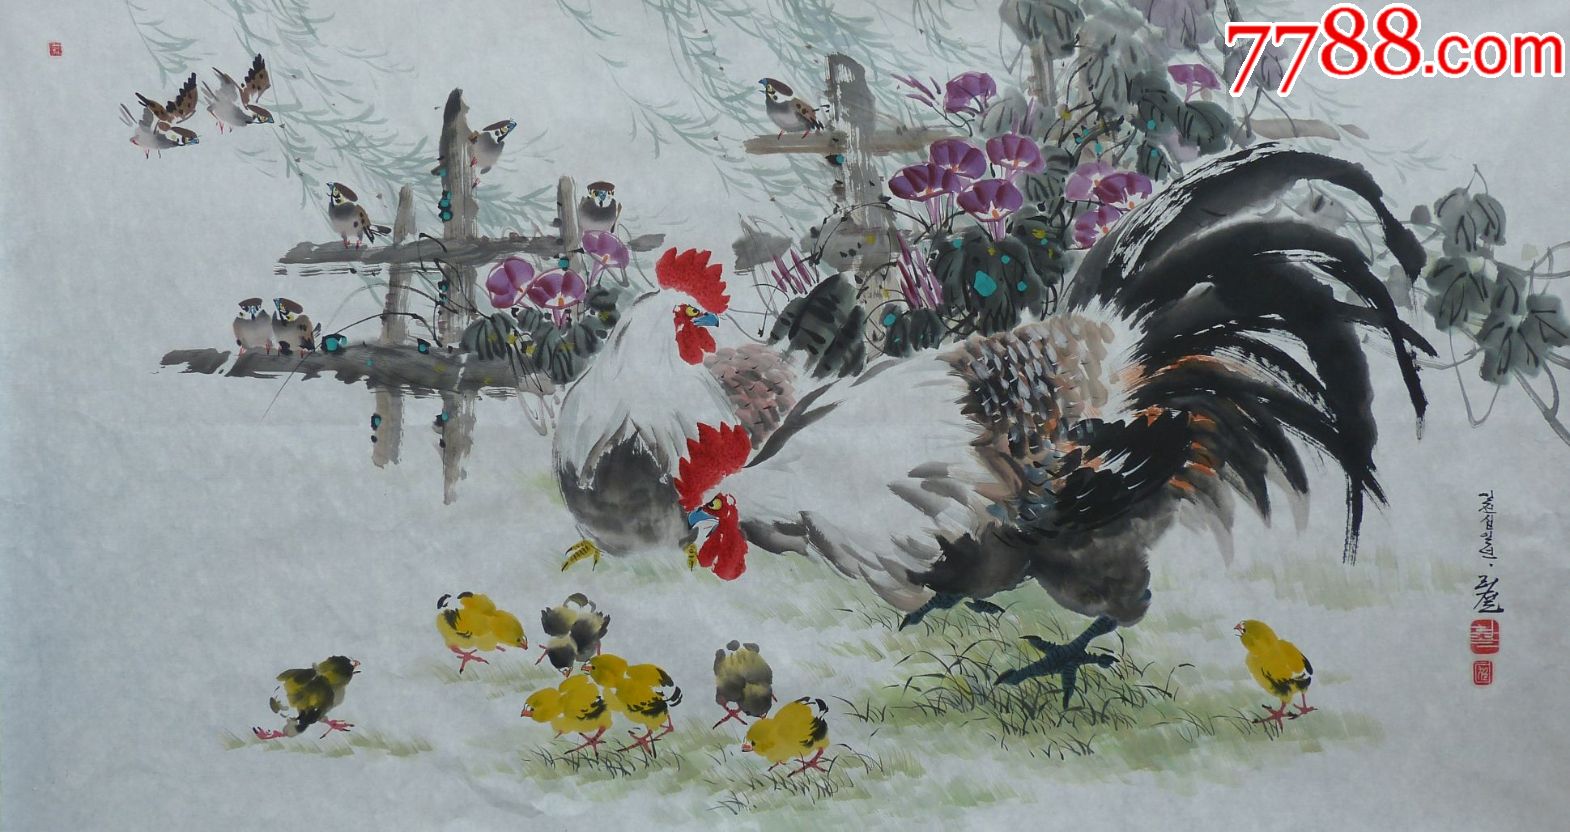 乡下人家群鸡觅食图画图片